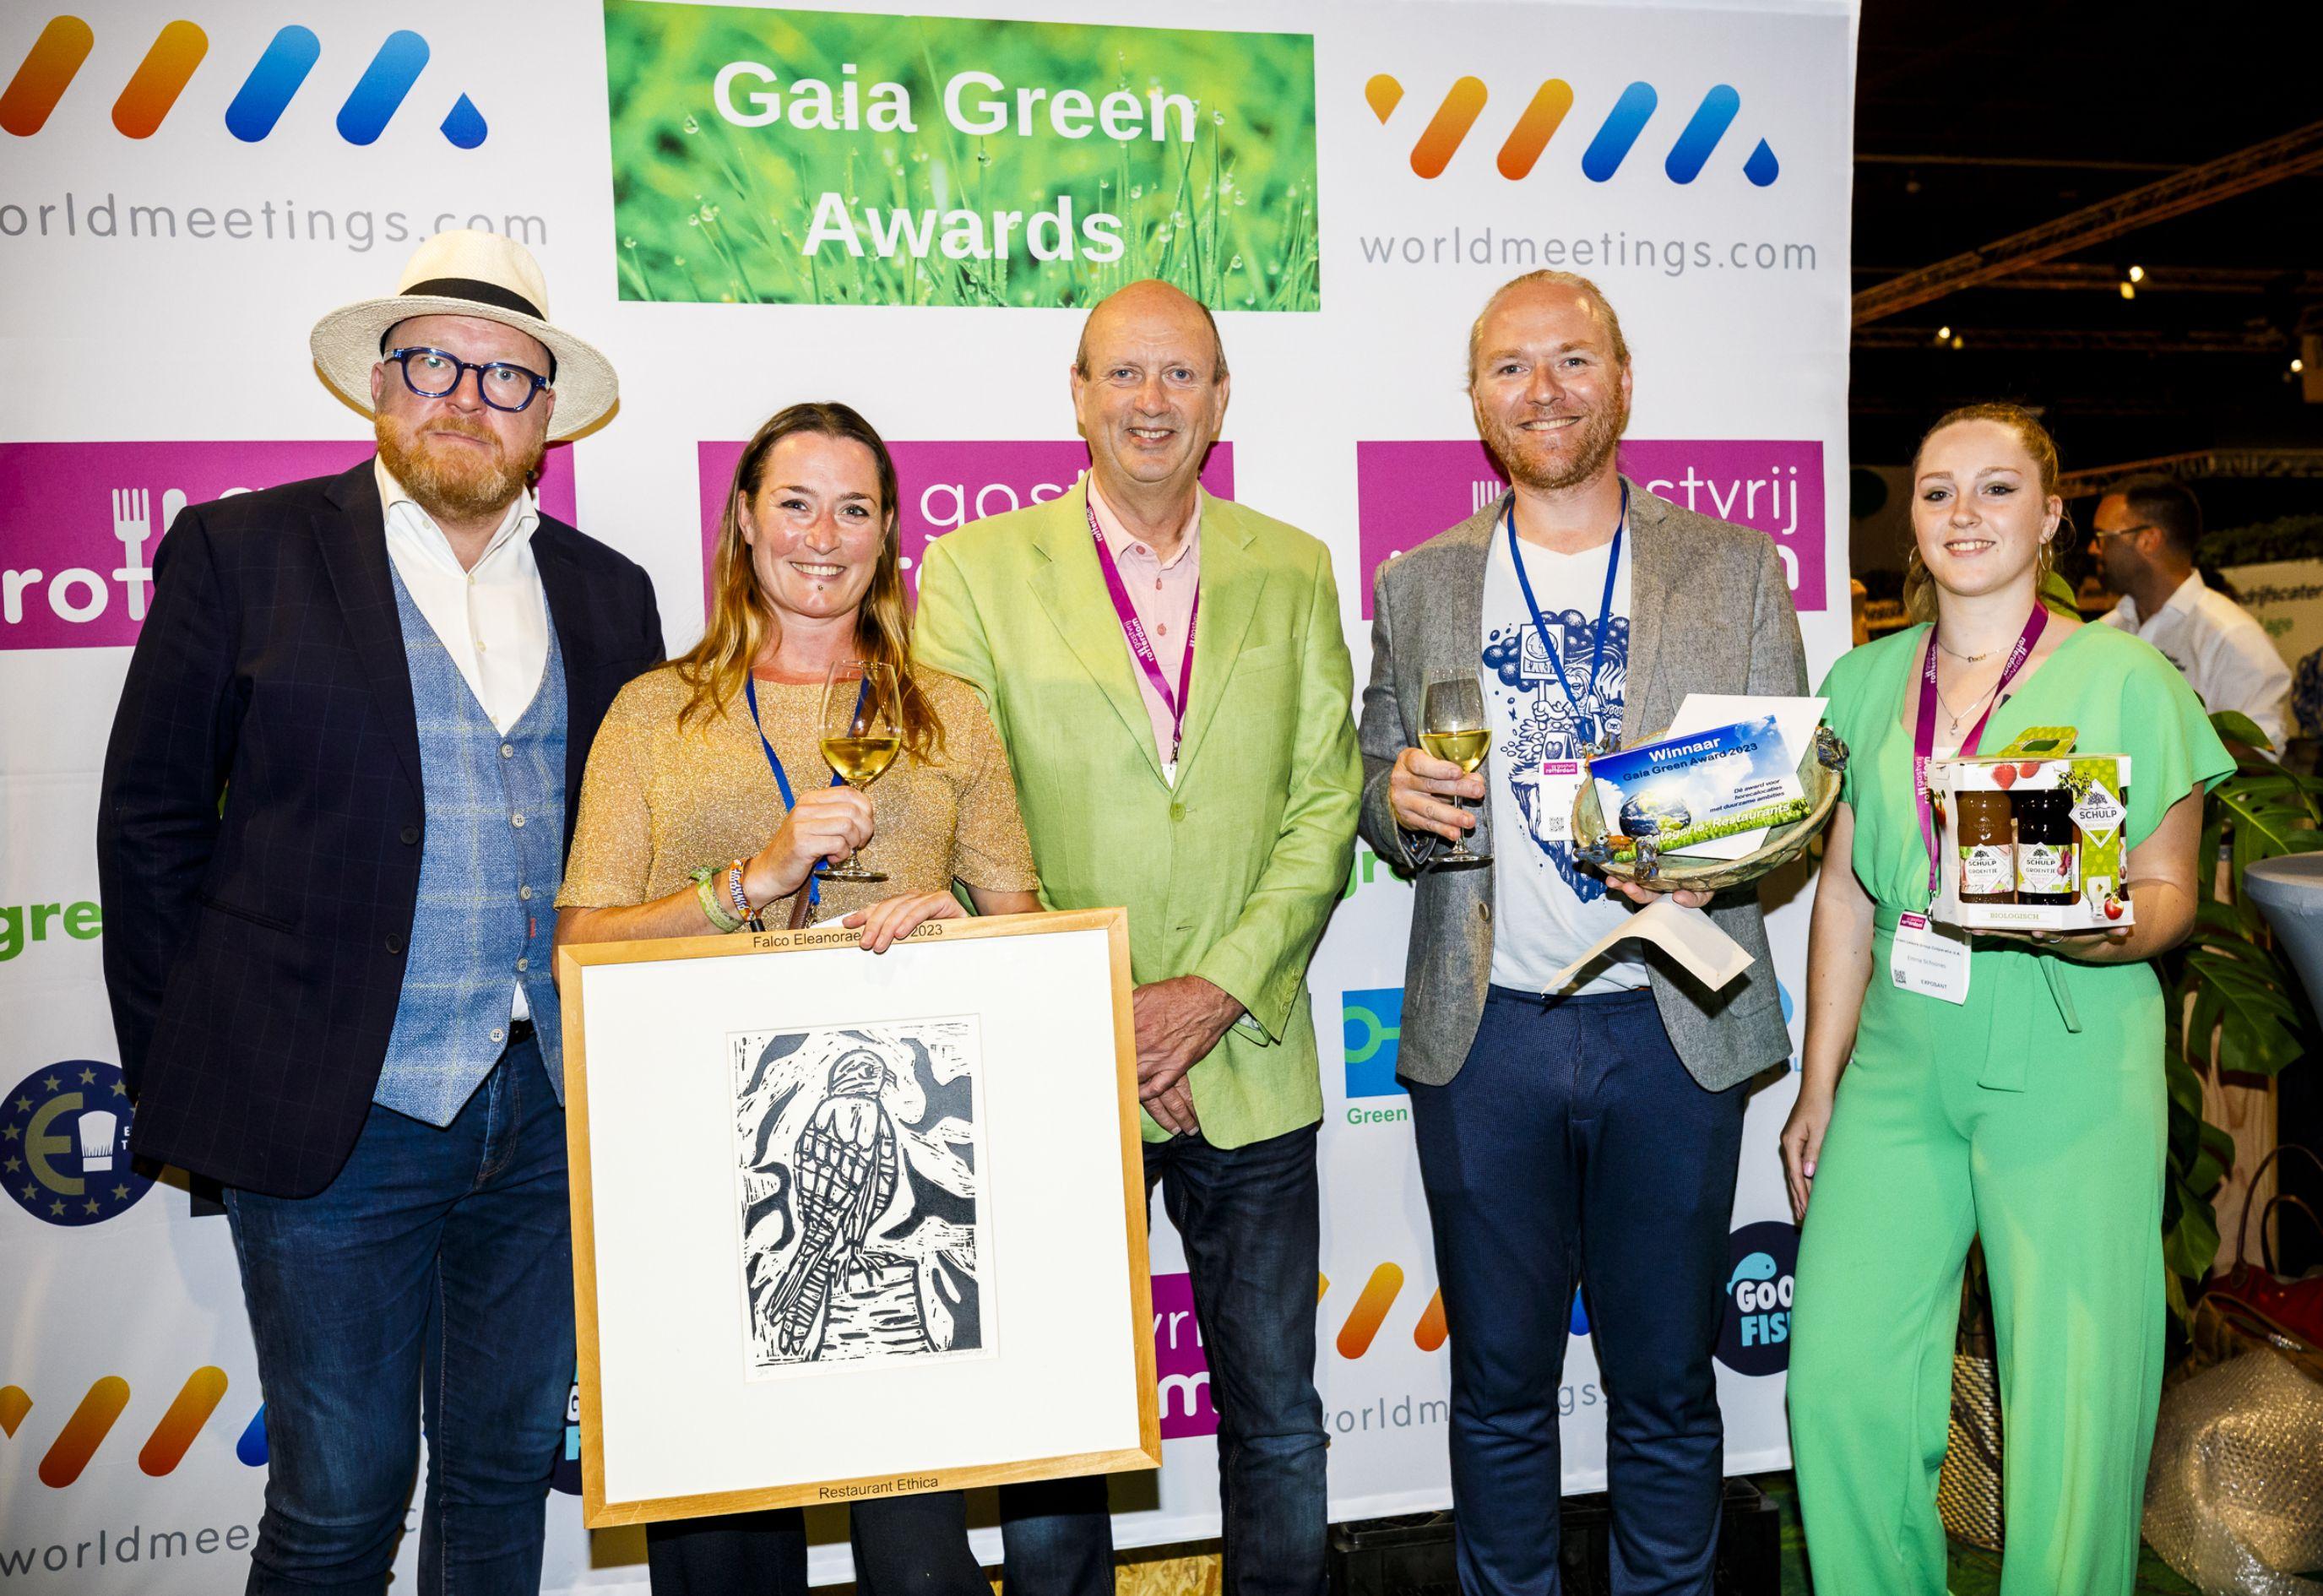 Gaia Green Awards